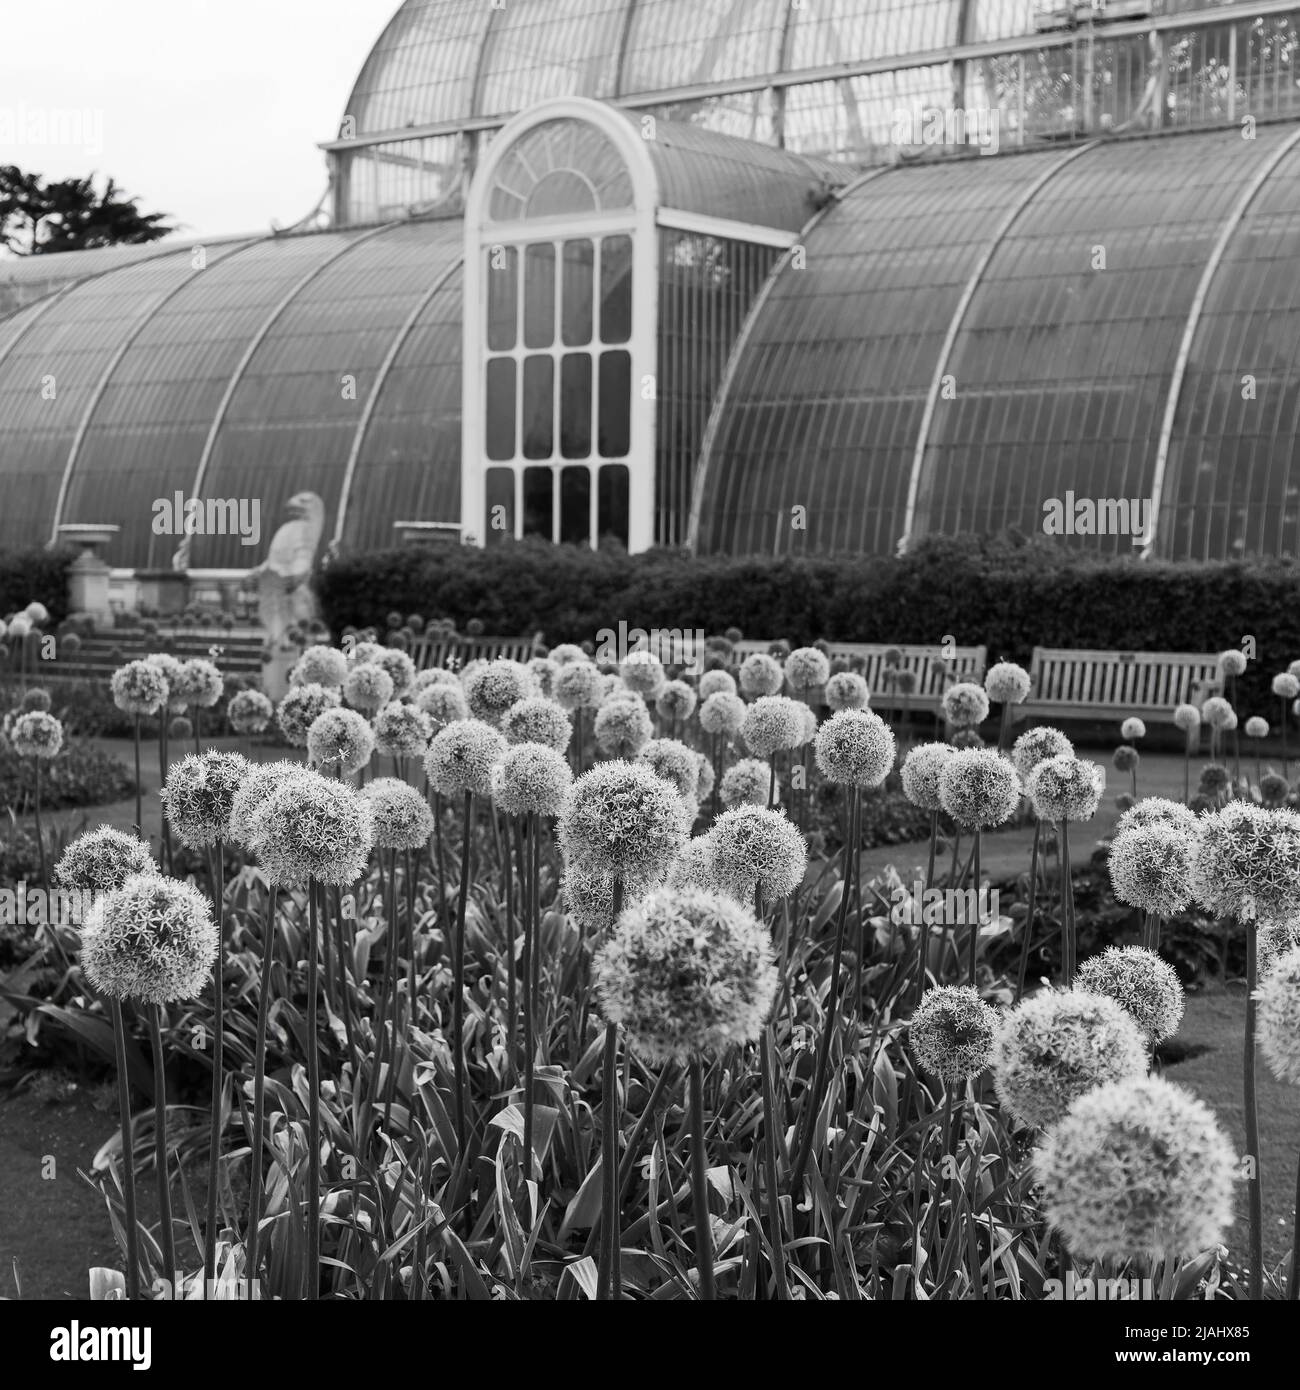 Richmond, Grand Londres, Angleterre, 18 mai 2022: Jardins botaniques royaux Kew. Fleurs au printemps avec le Palm House derrière. Monochrome. Banque D'Images